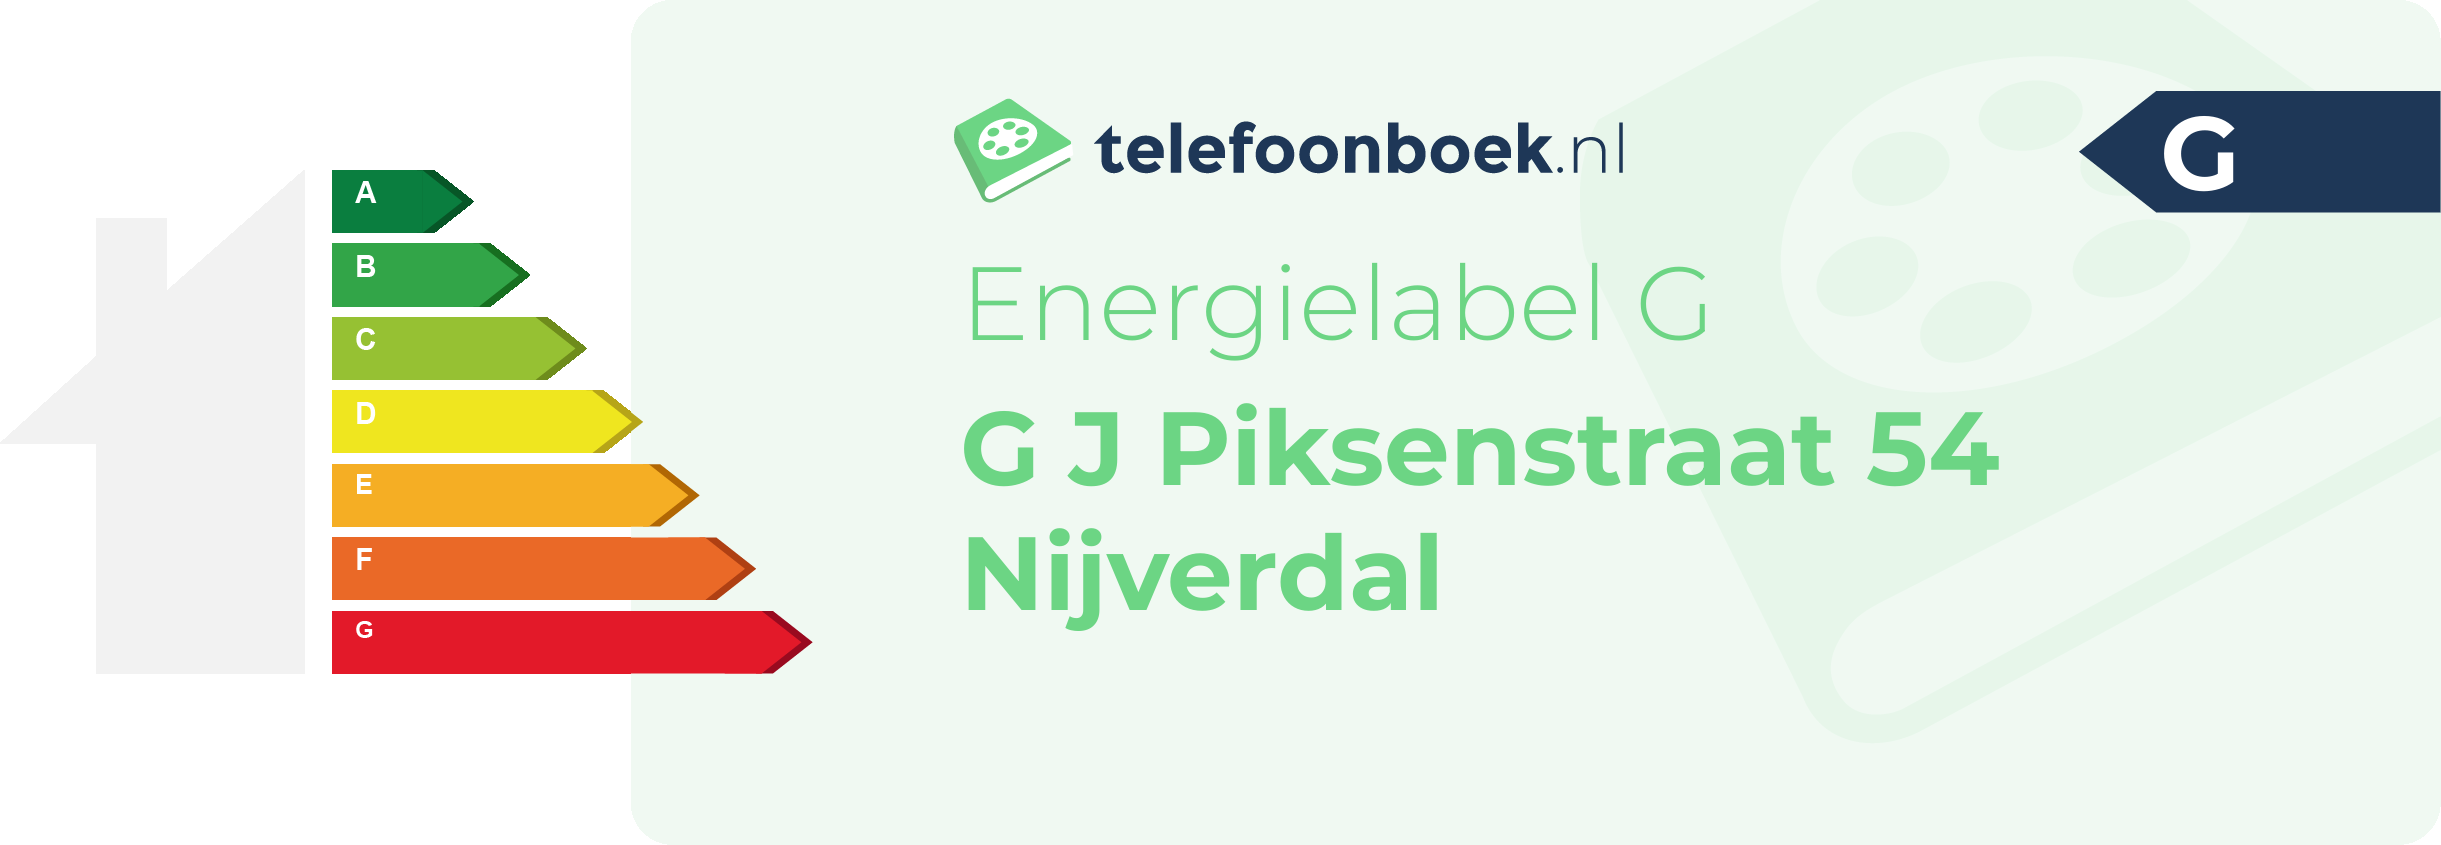 Energielabel G J Piksenstraat 54 Nijverdal